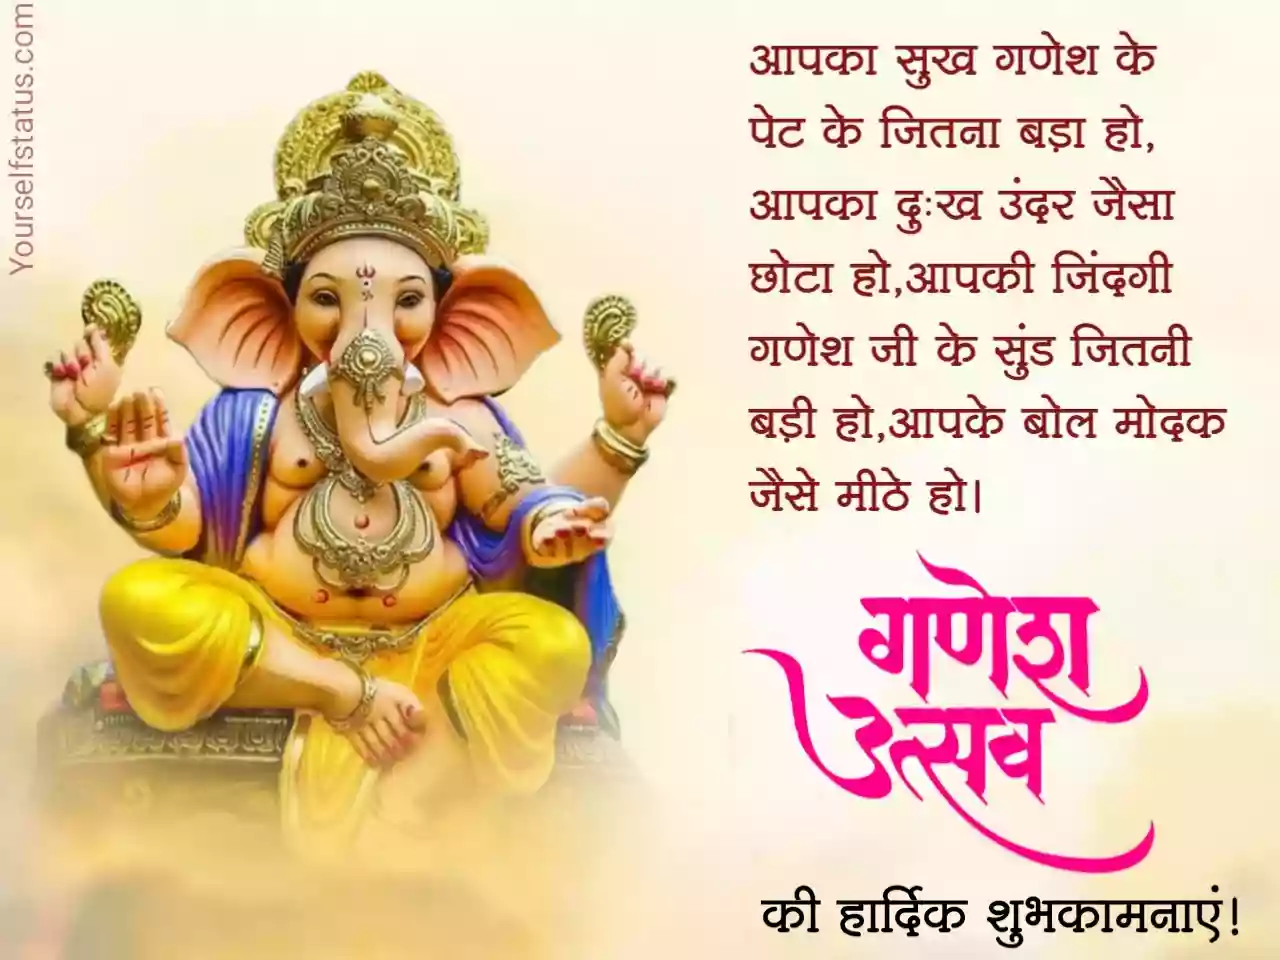 Ganesh chaturthi images download hindi